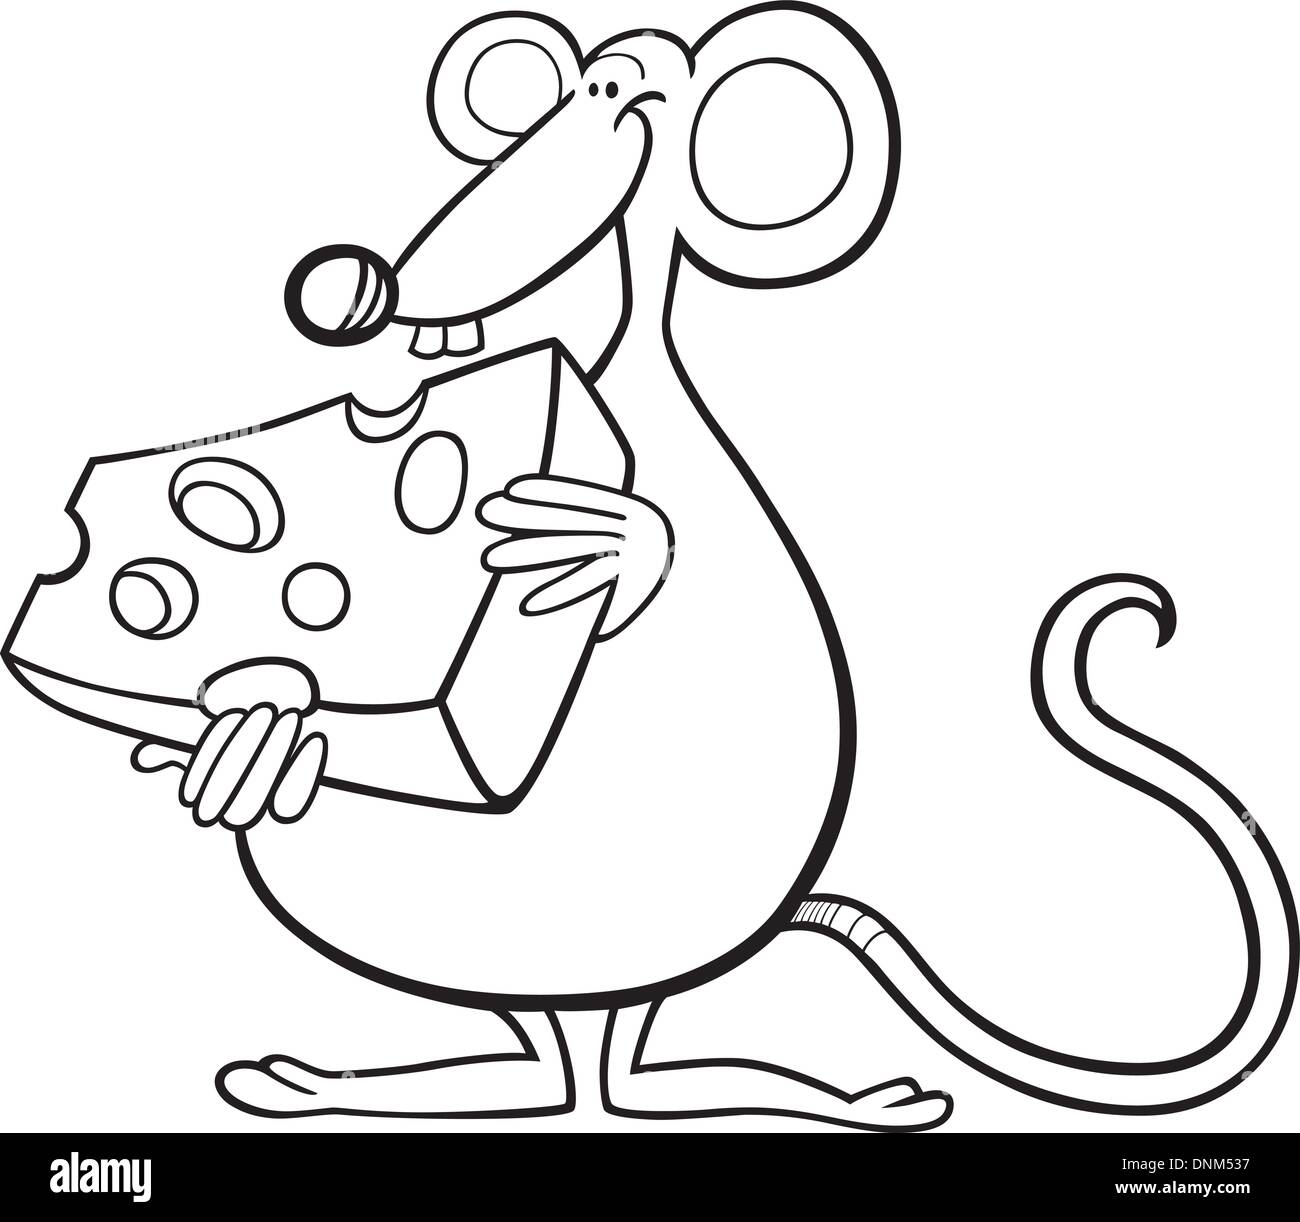 Illustrazione del topo con formaggio per un libro da colorare Immagine e  Vettoriale - Alamy